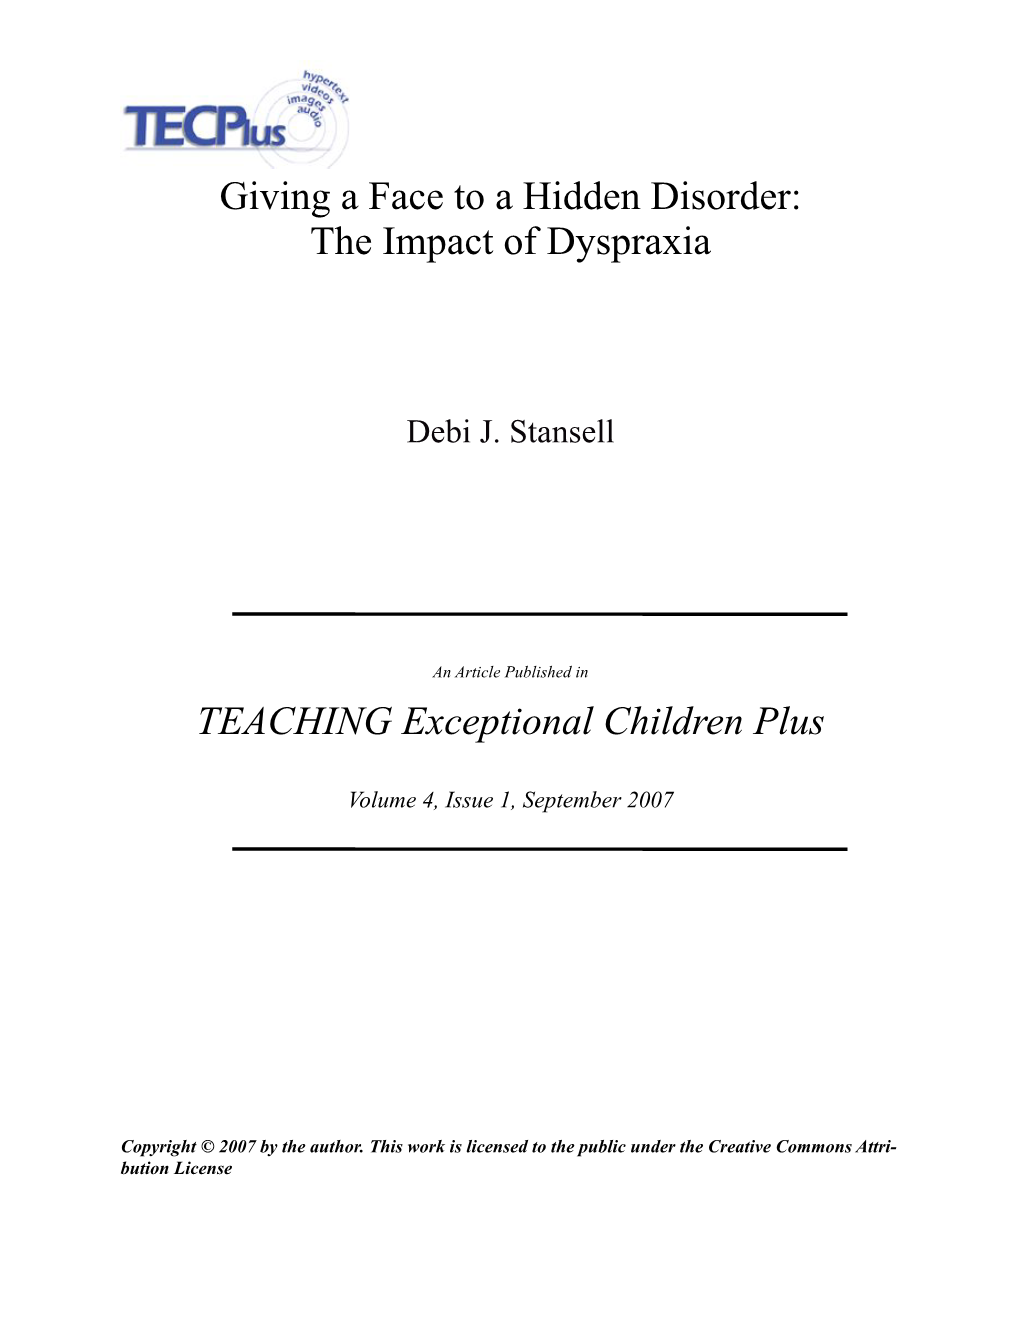 Giving a Face to a Hidden Disorder: the Impact of Dyspraxia